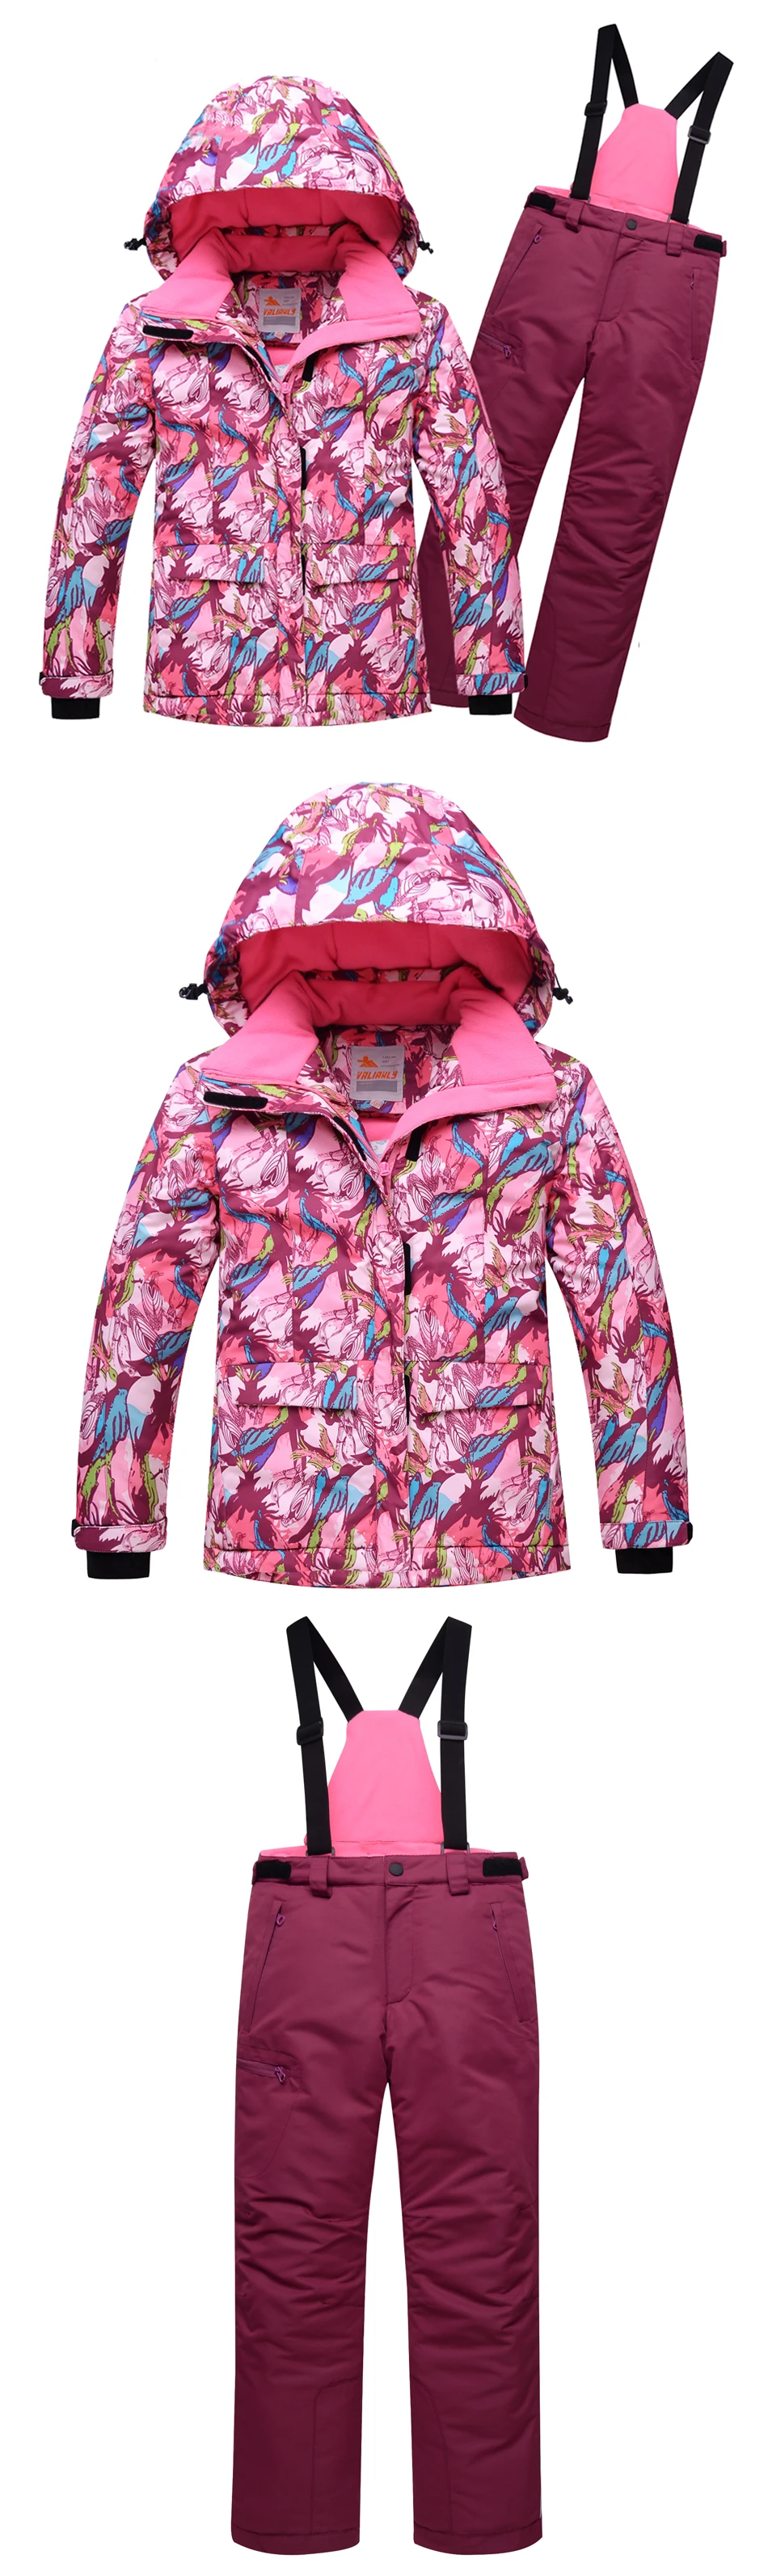 Детский лыжный костюм высокого качества для девочек, цельный зимний комбинезон, лыжная куртка, брюки, лыжный костюм для сноуборда, съемный капюшон